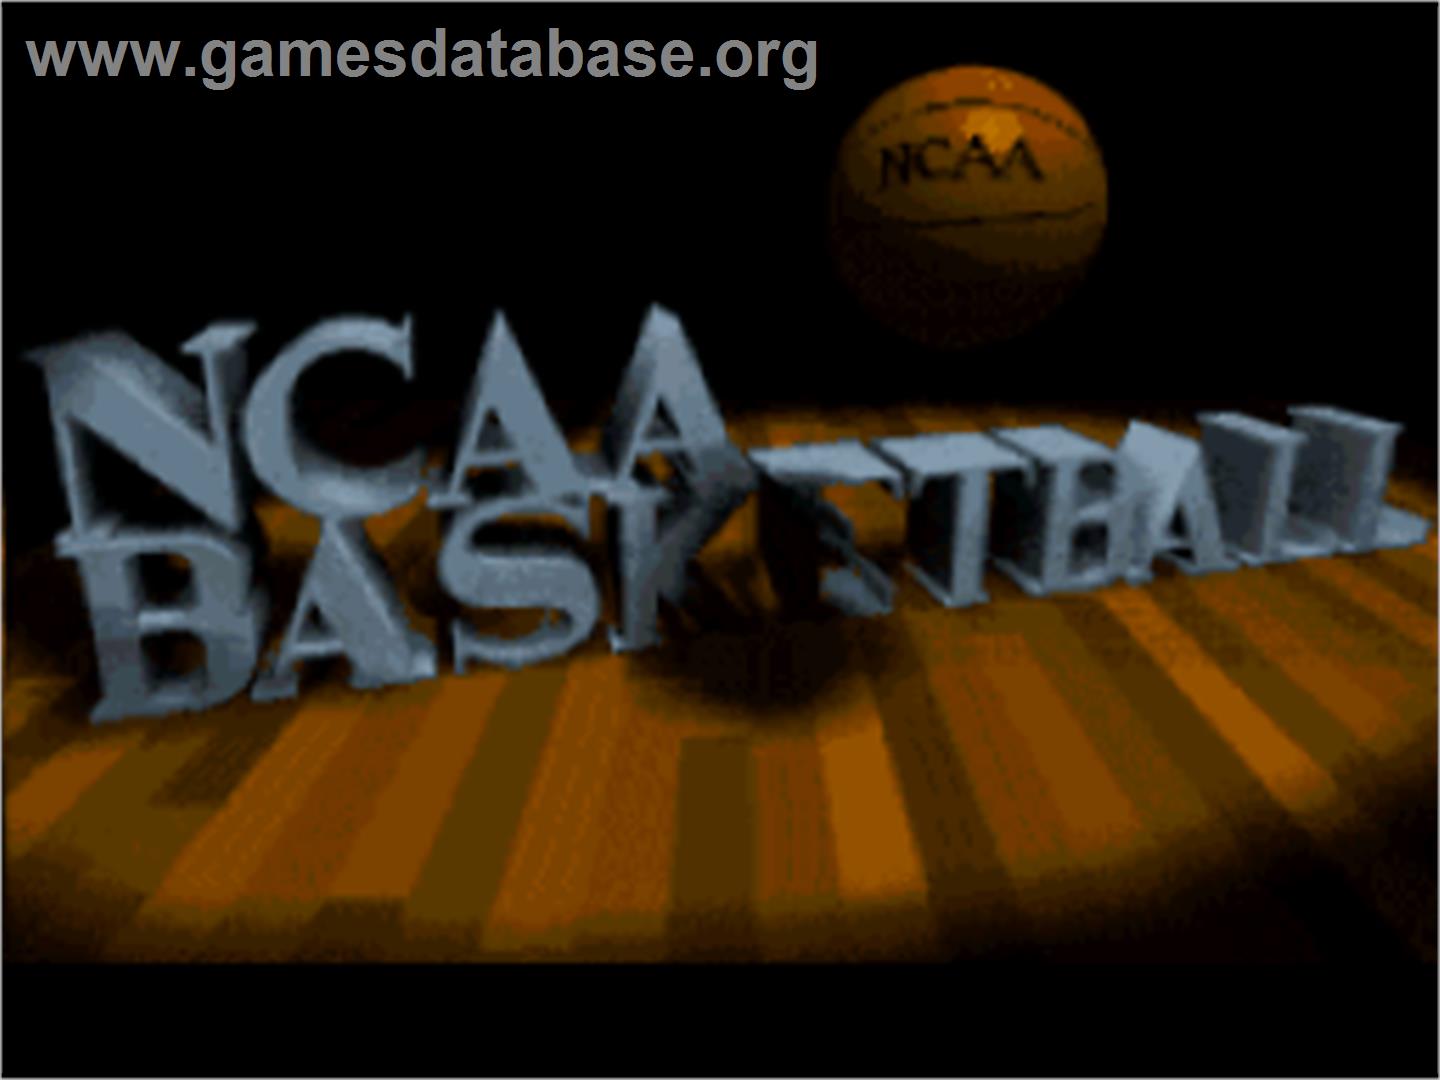 NCAA Basketball - Nintendo SNES - Artwork - Title Screen